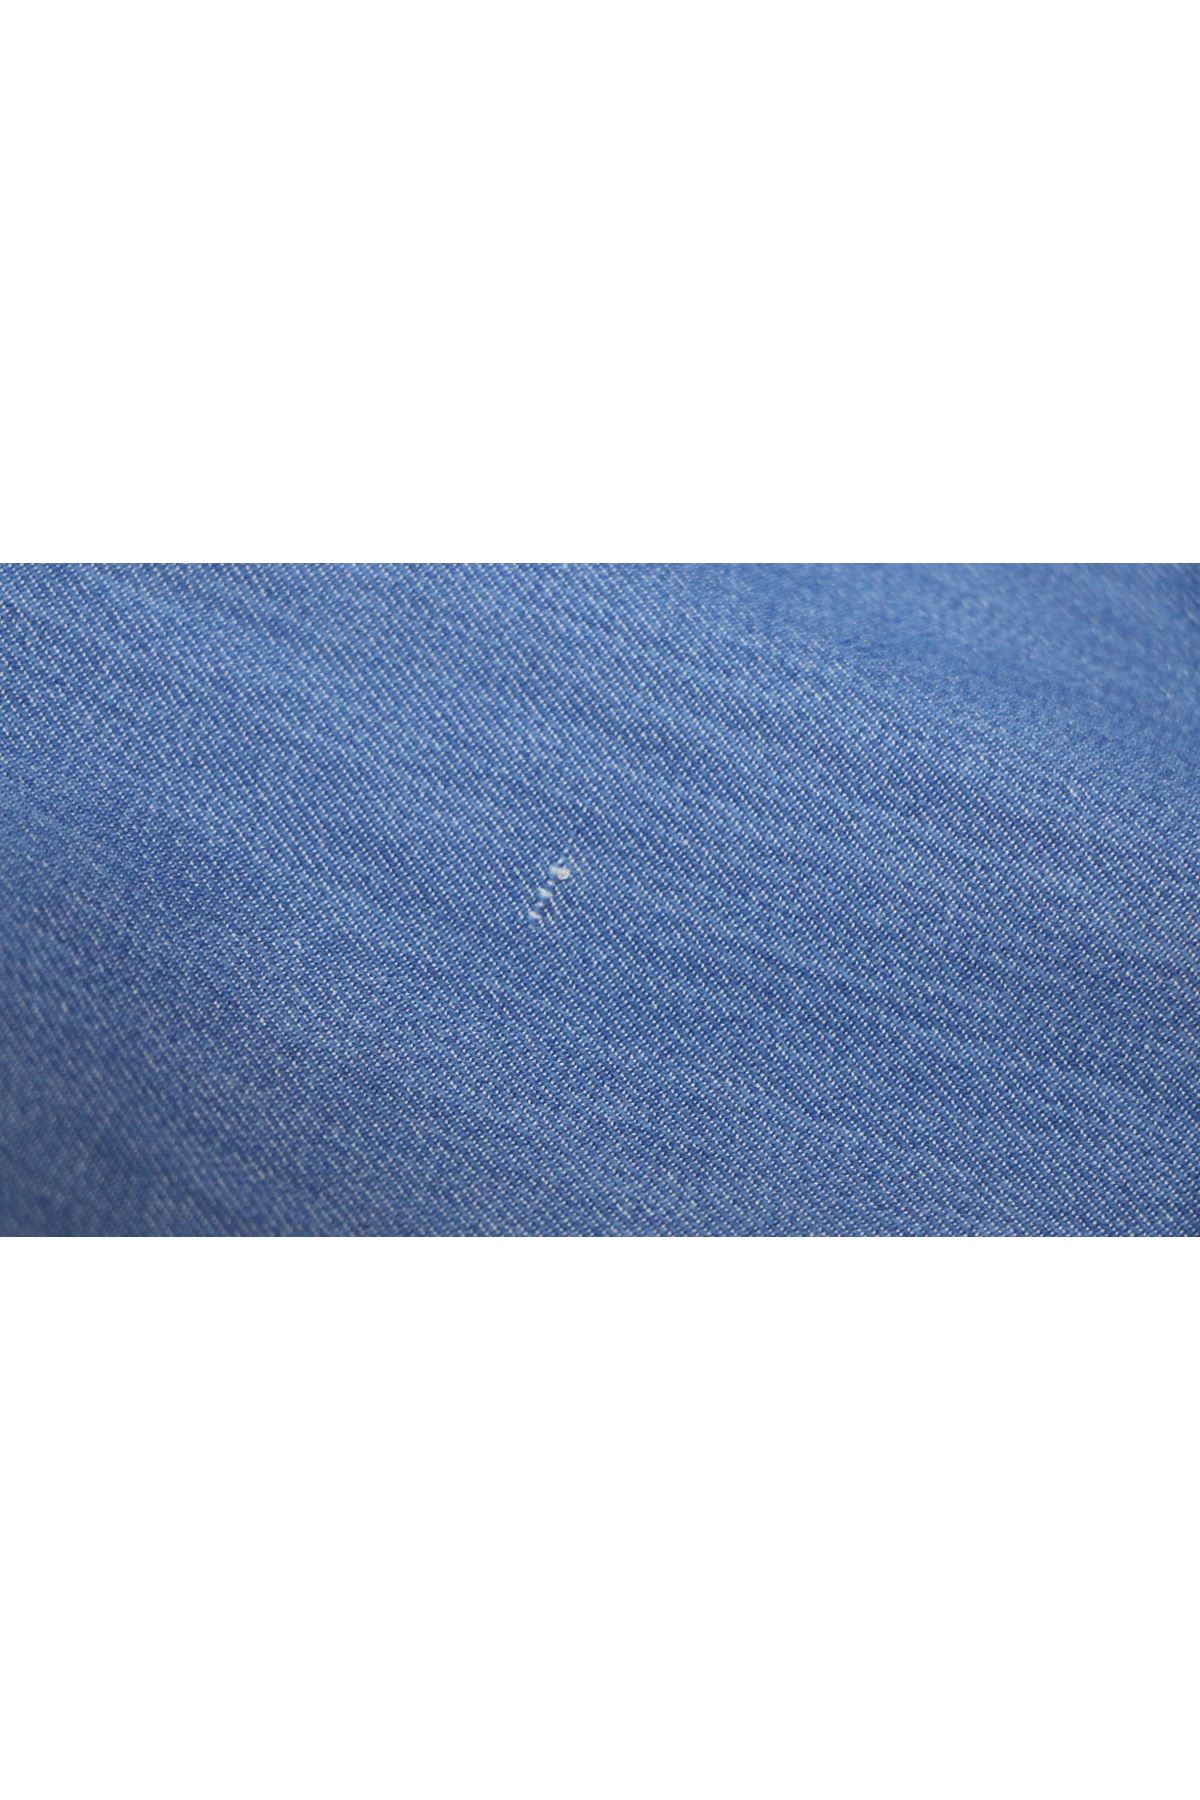 D-9183-4 Büyük Beden Dar Paça Uzun Boy Taşlamalı Defolu Kot Pantolon - Buz Mavi 